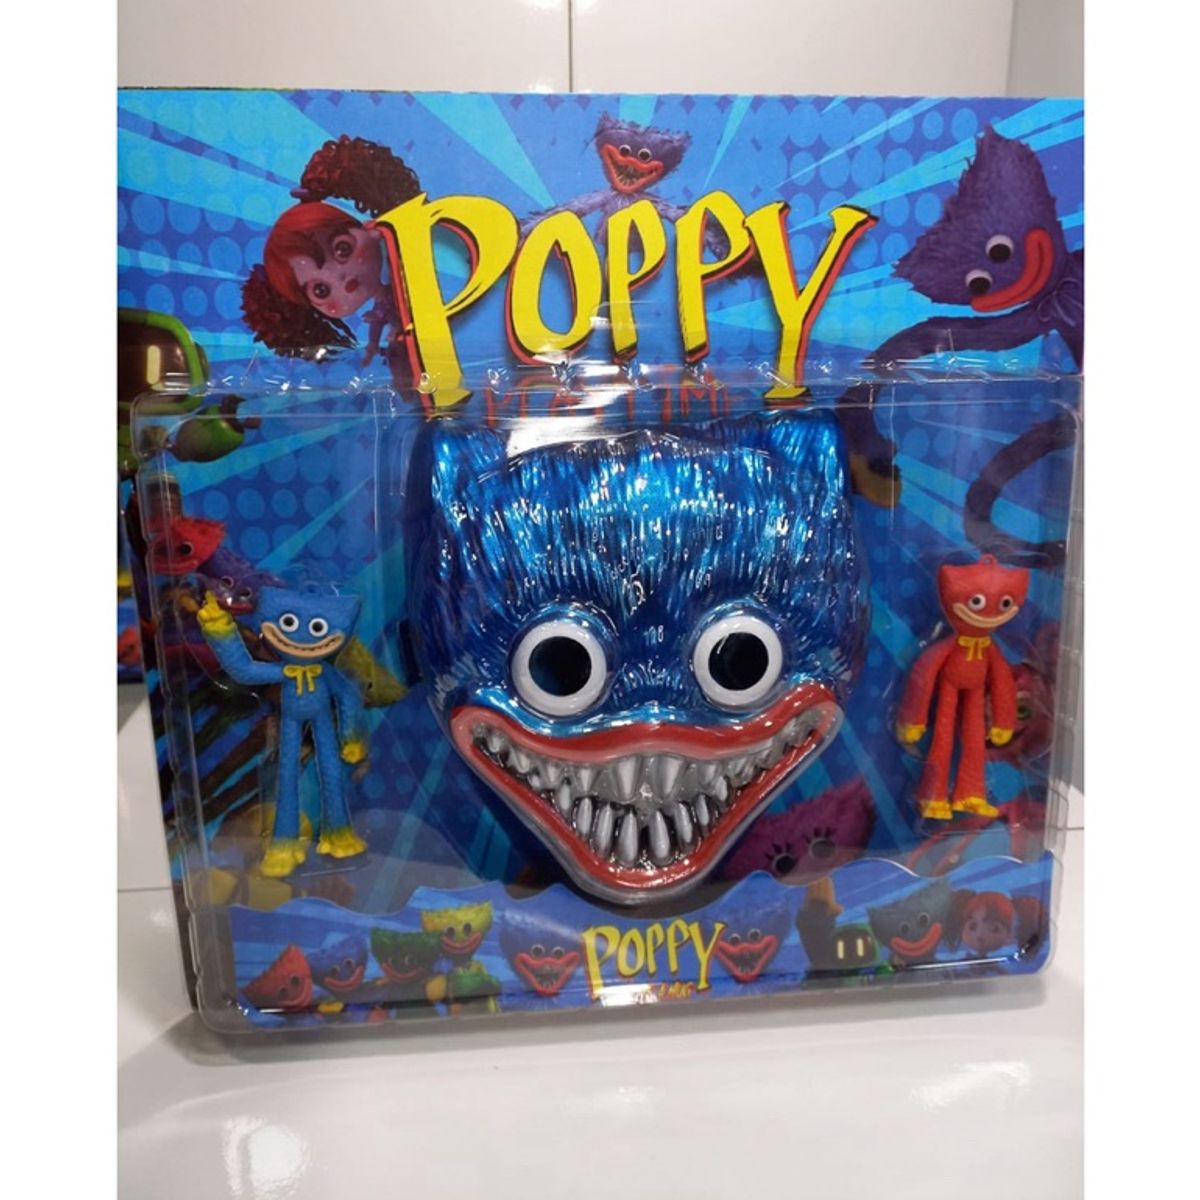 8 Bonecos Poppy Playtime Huggy Wuggy e Outros Personagens | Brinquedo Poppy  Nunca Usado 77159249 | enjoei